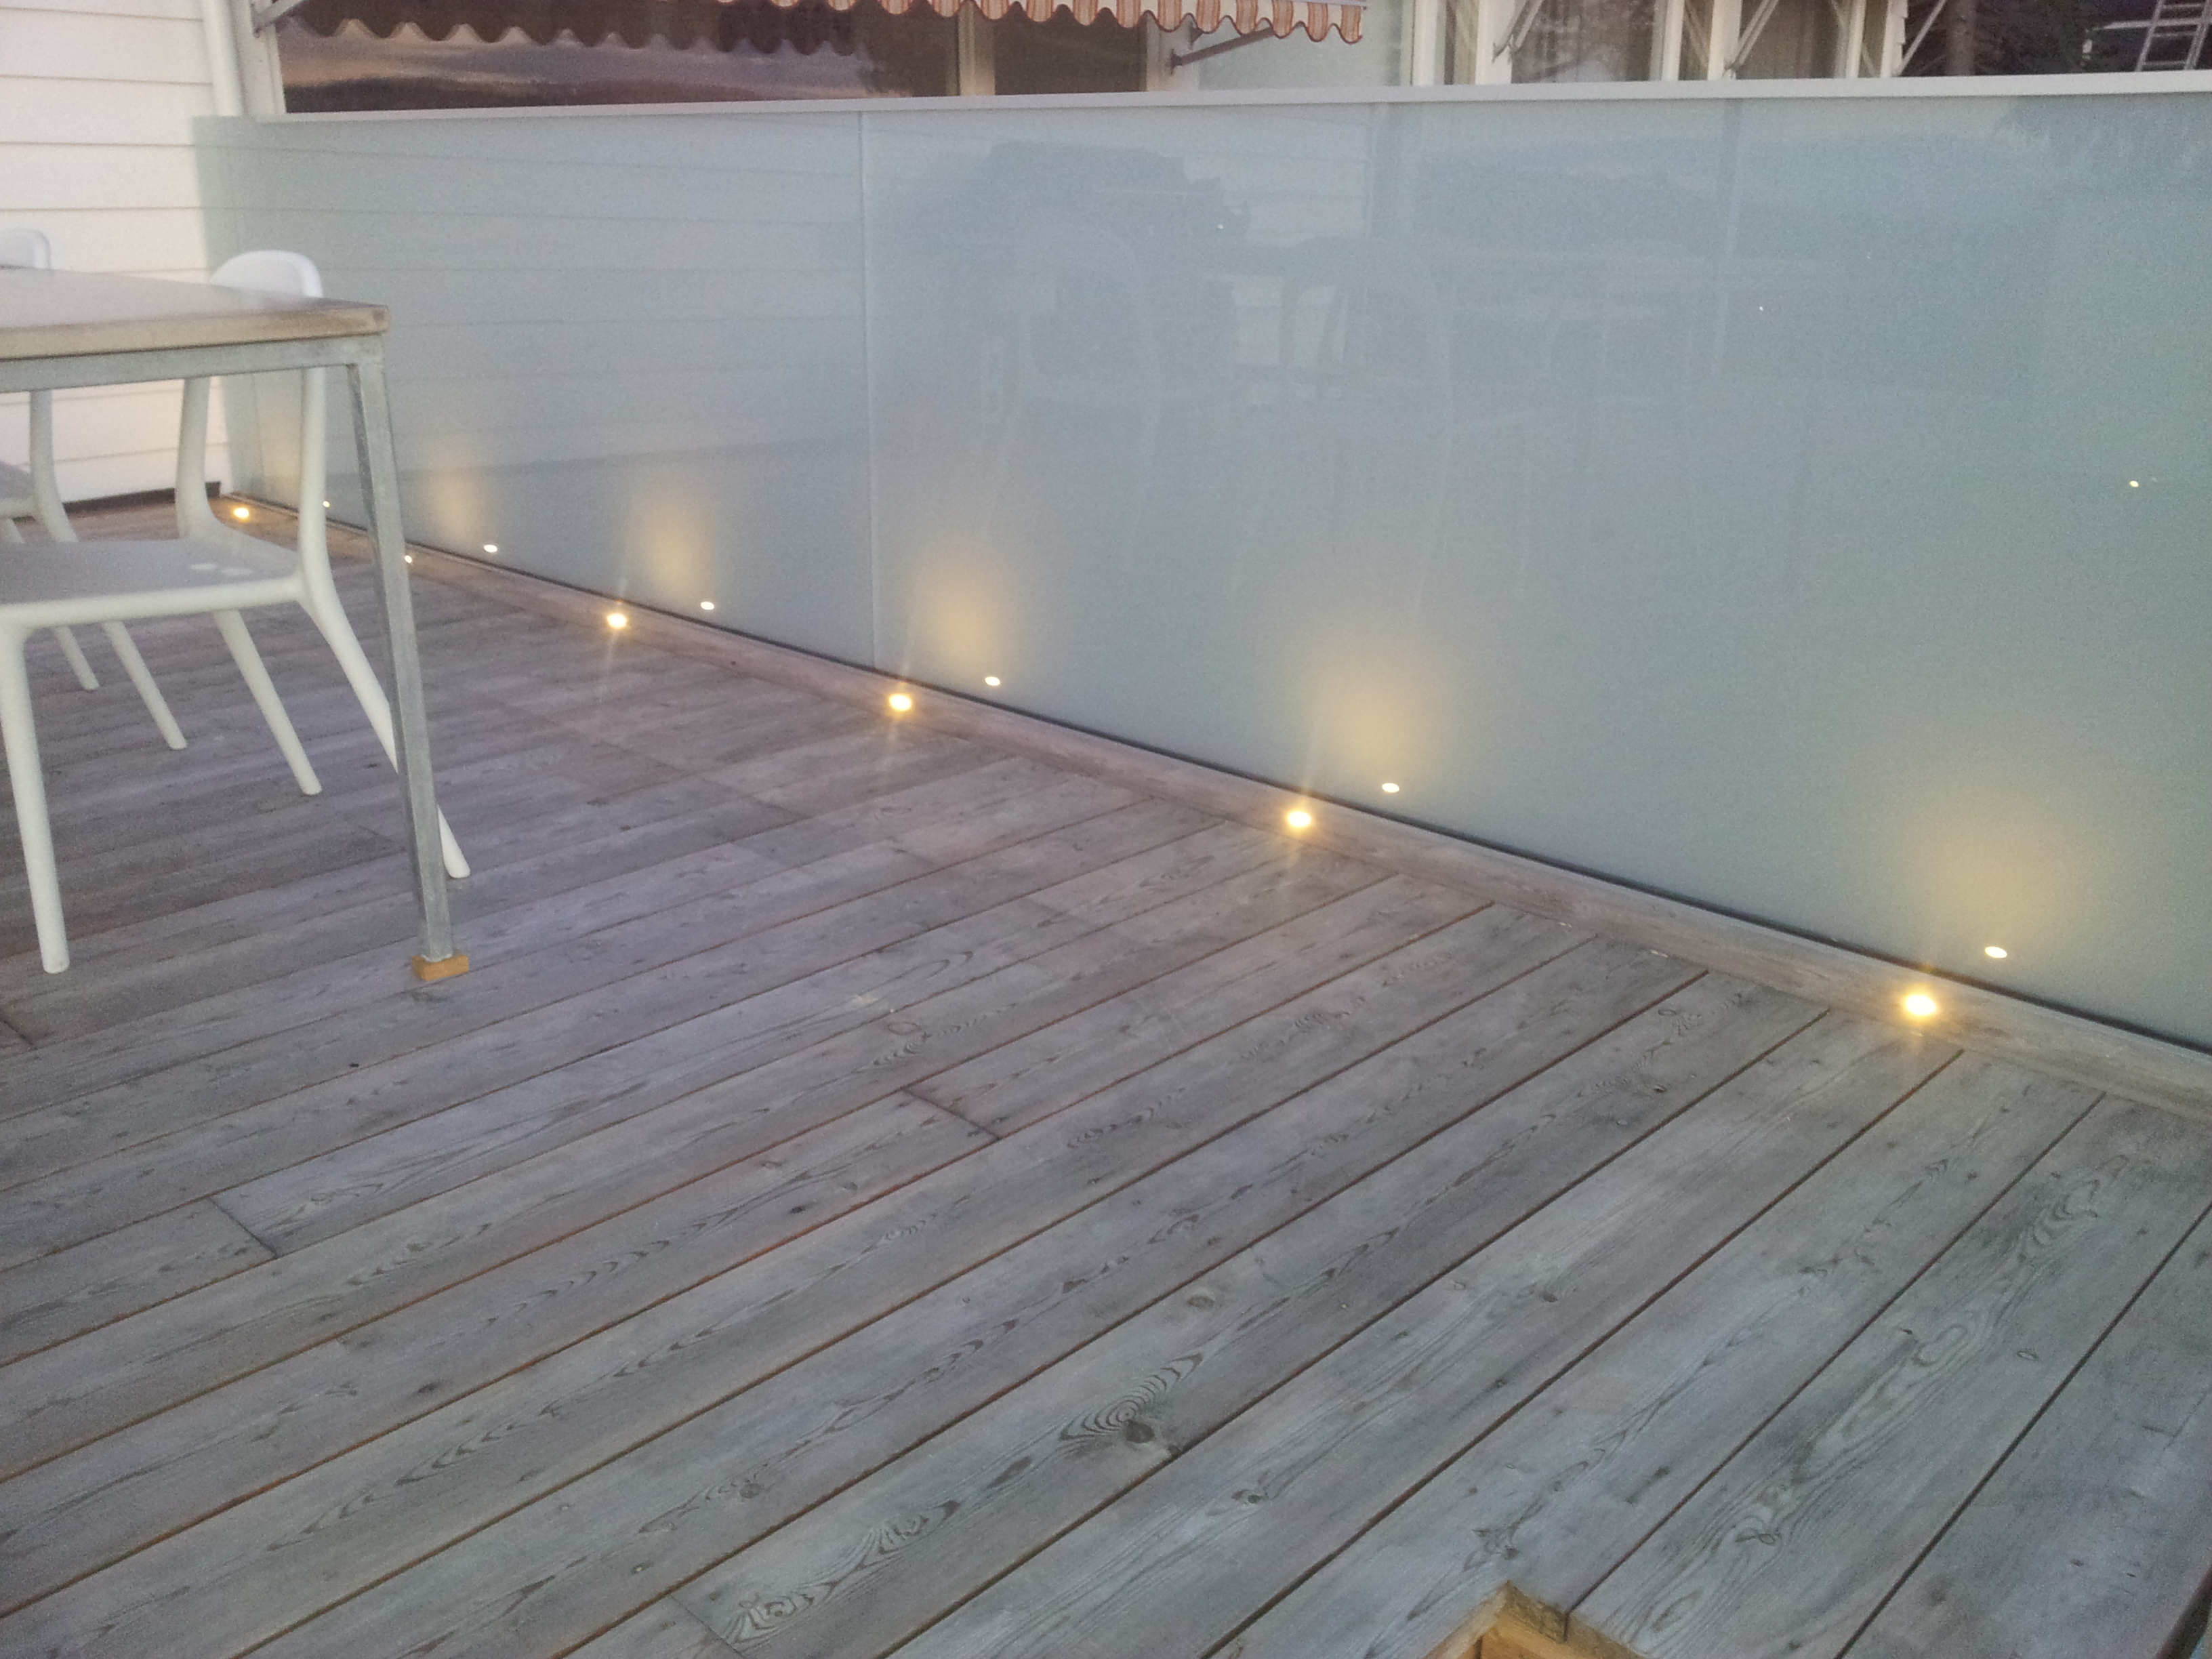 LED Lys i terrassebord/gulv - 2012-08-26 21.13.59.jpg - 2rgeir